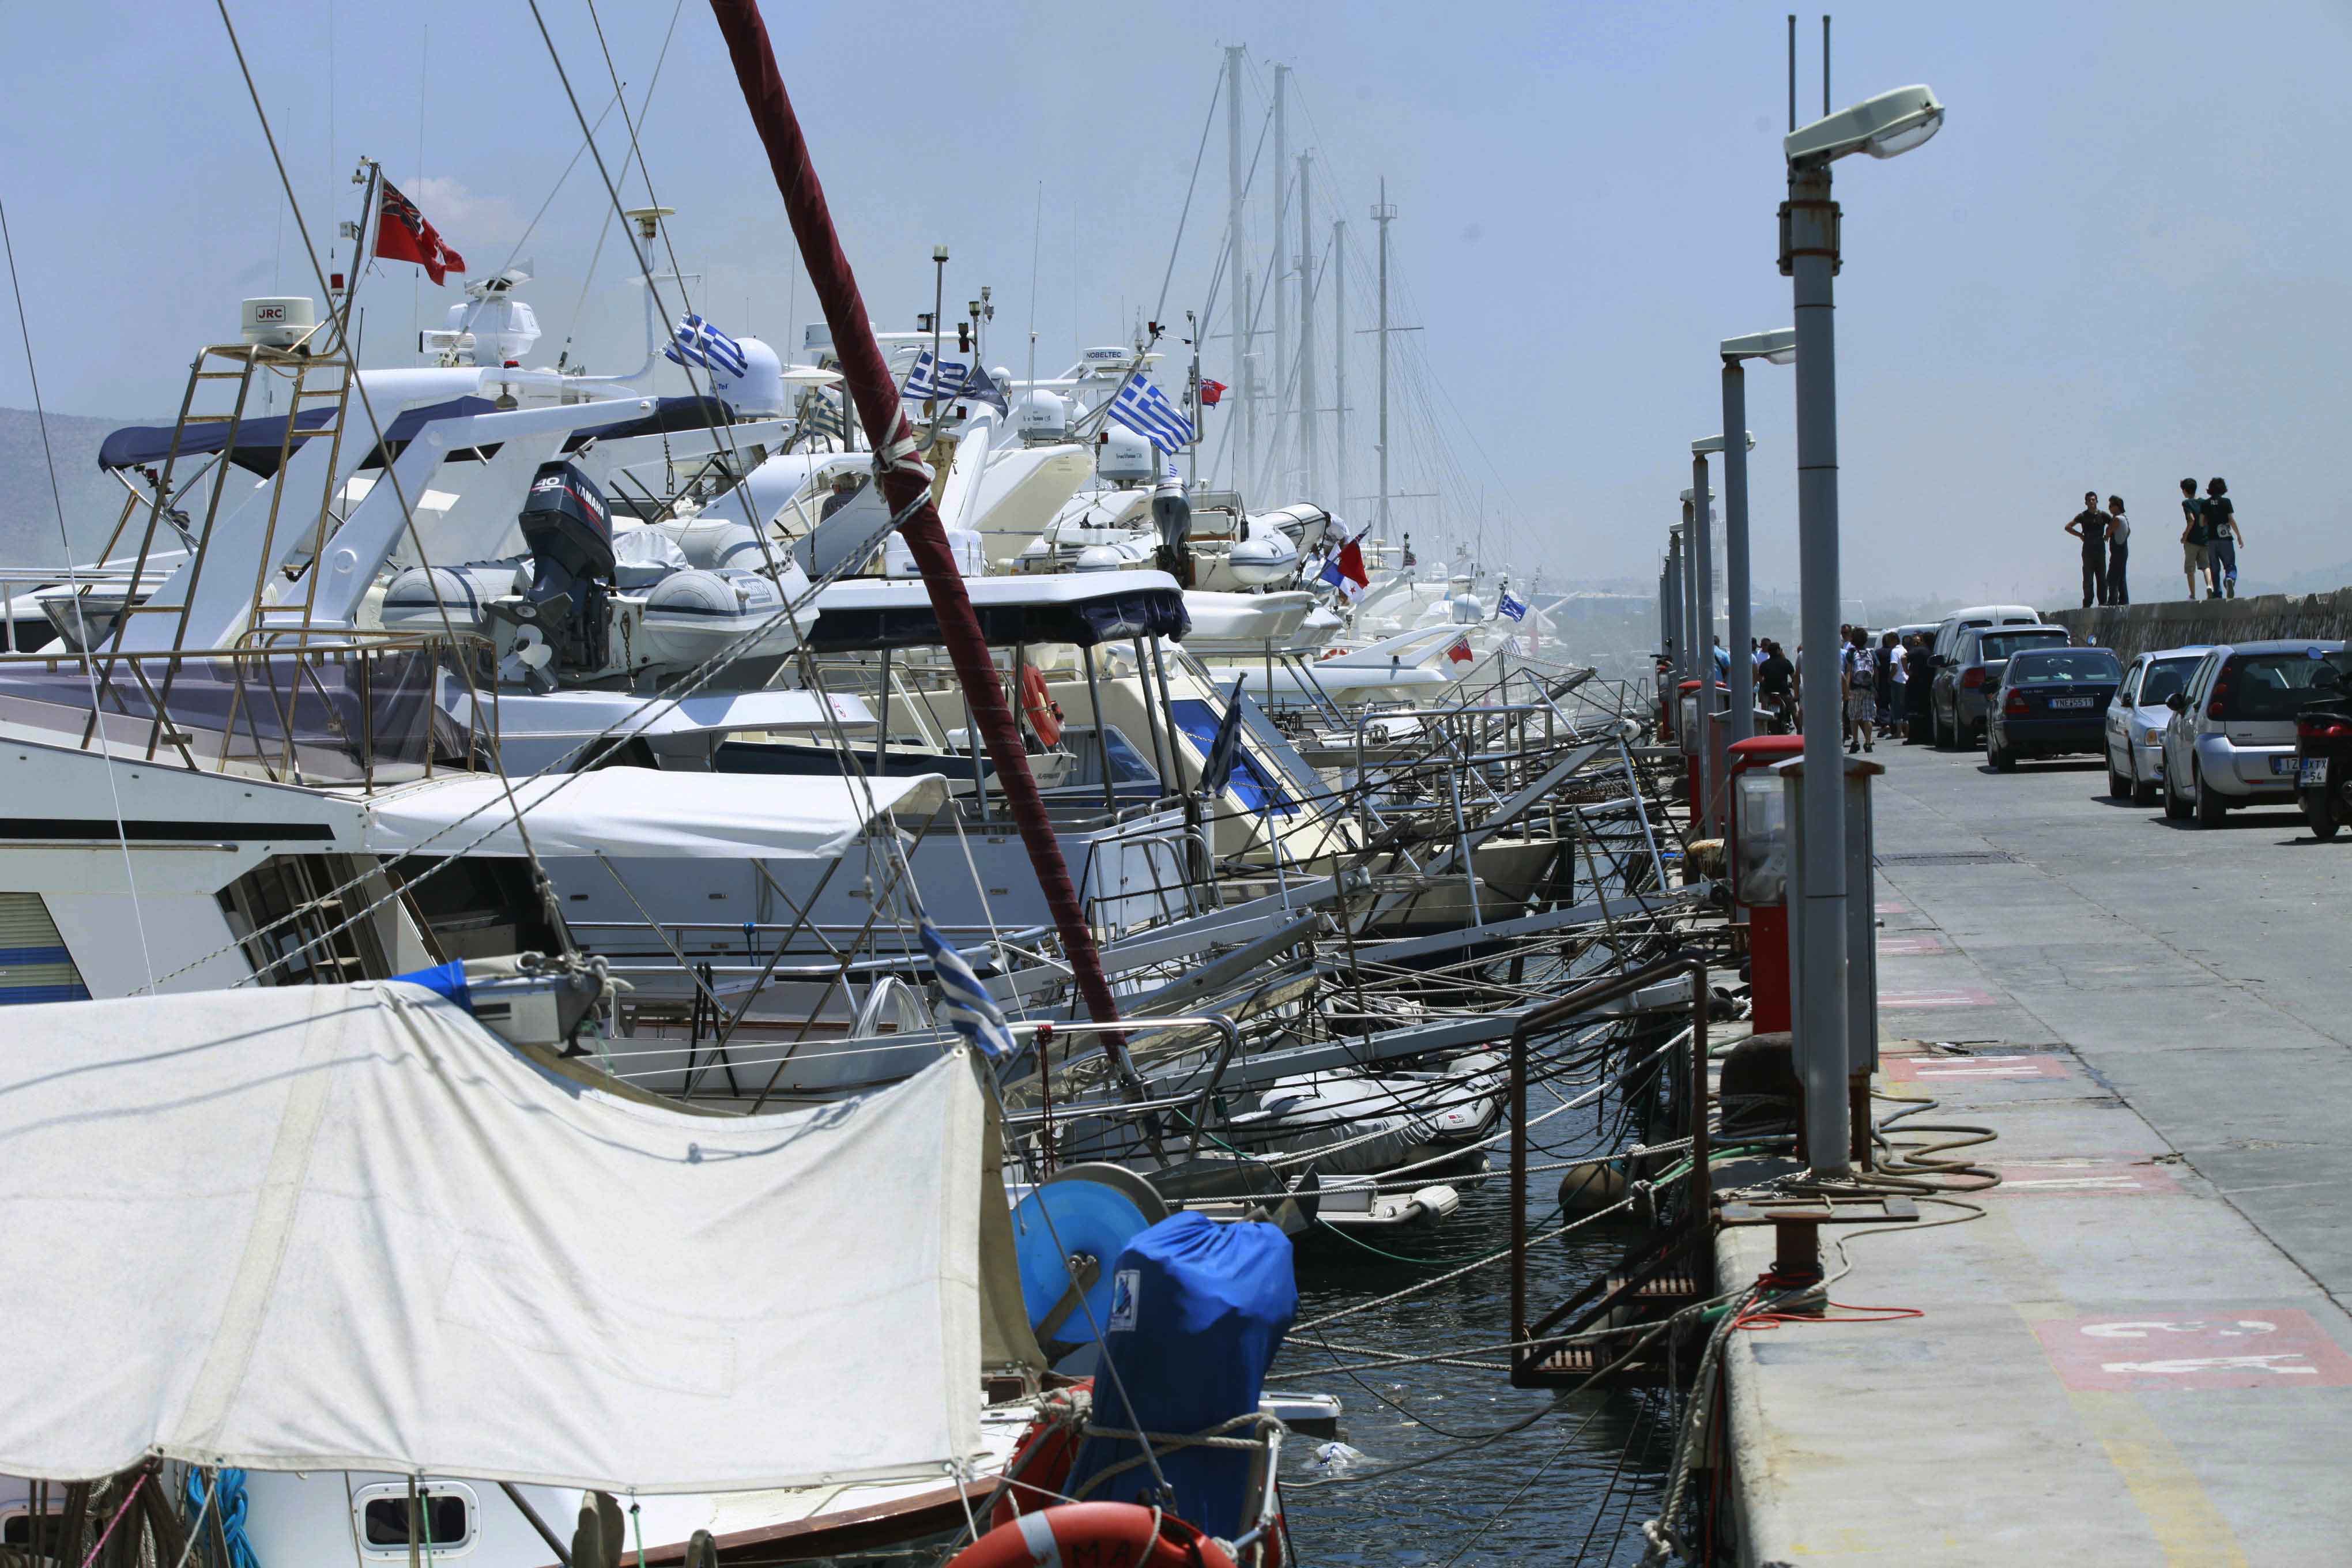 Τουριστικό σκάφος βυθίστηκε στη μαρίνα Αλίμου